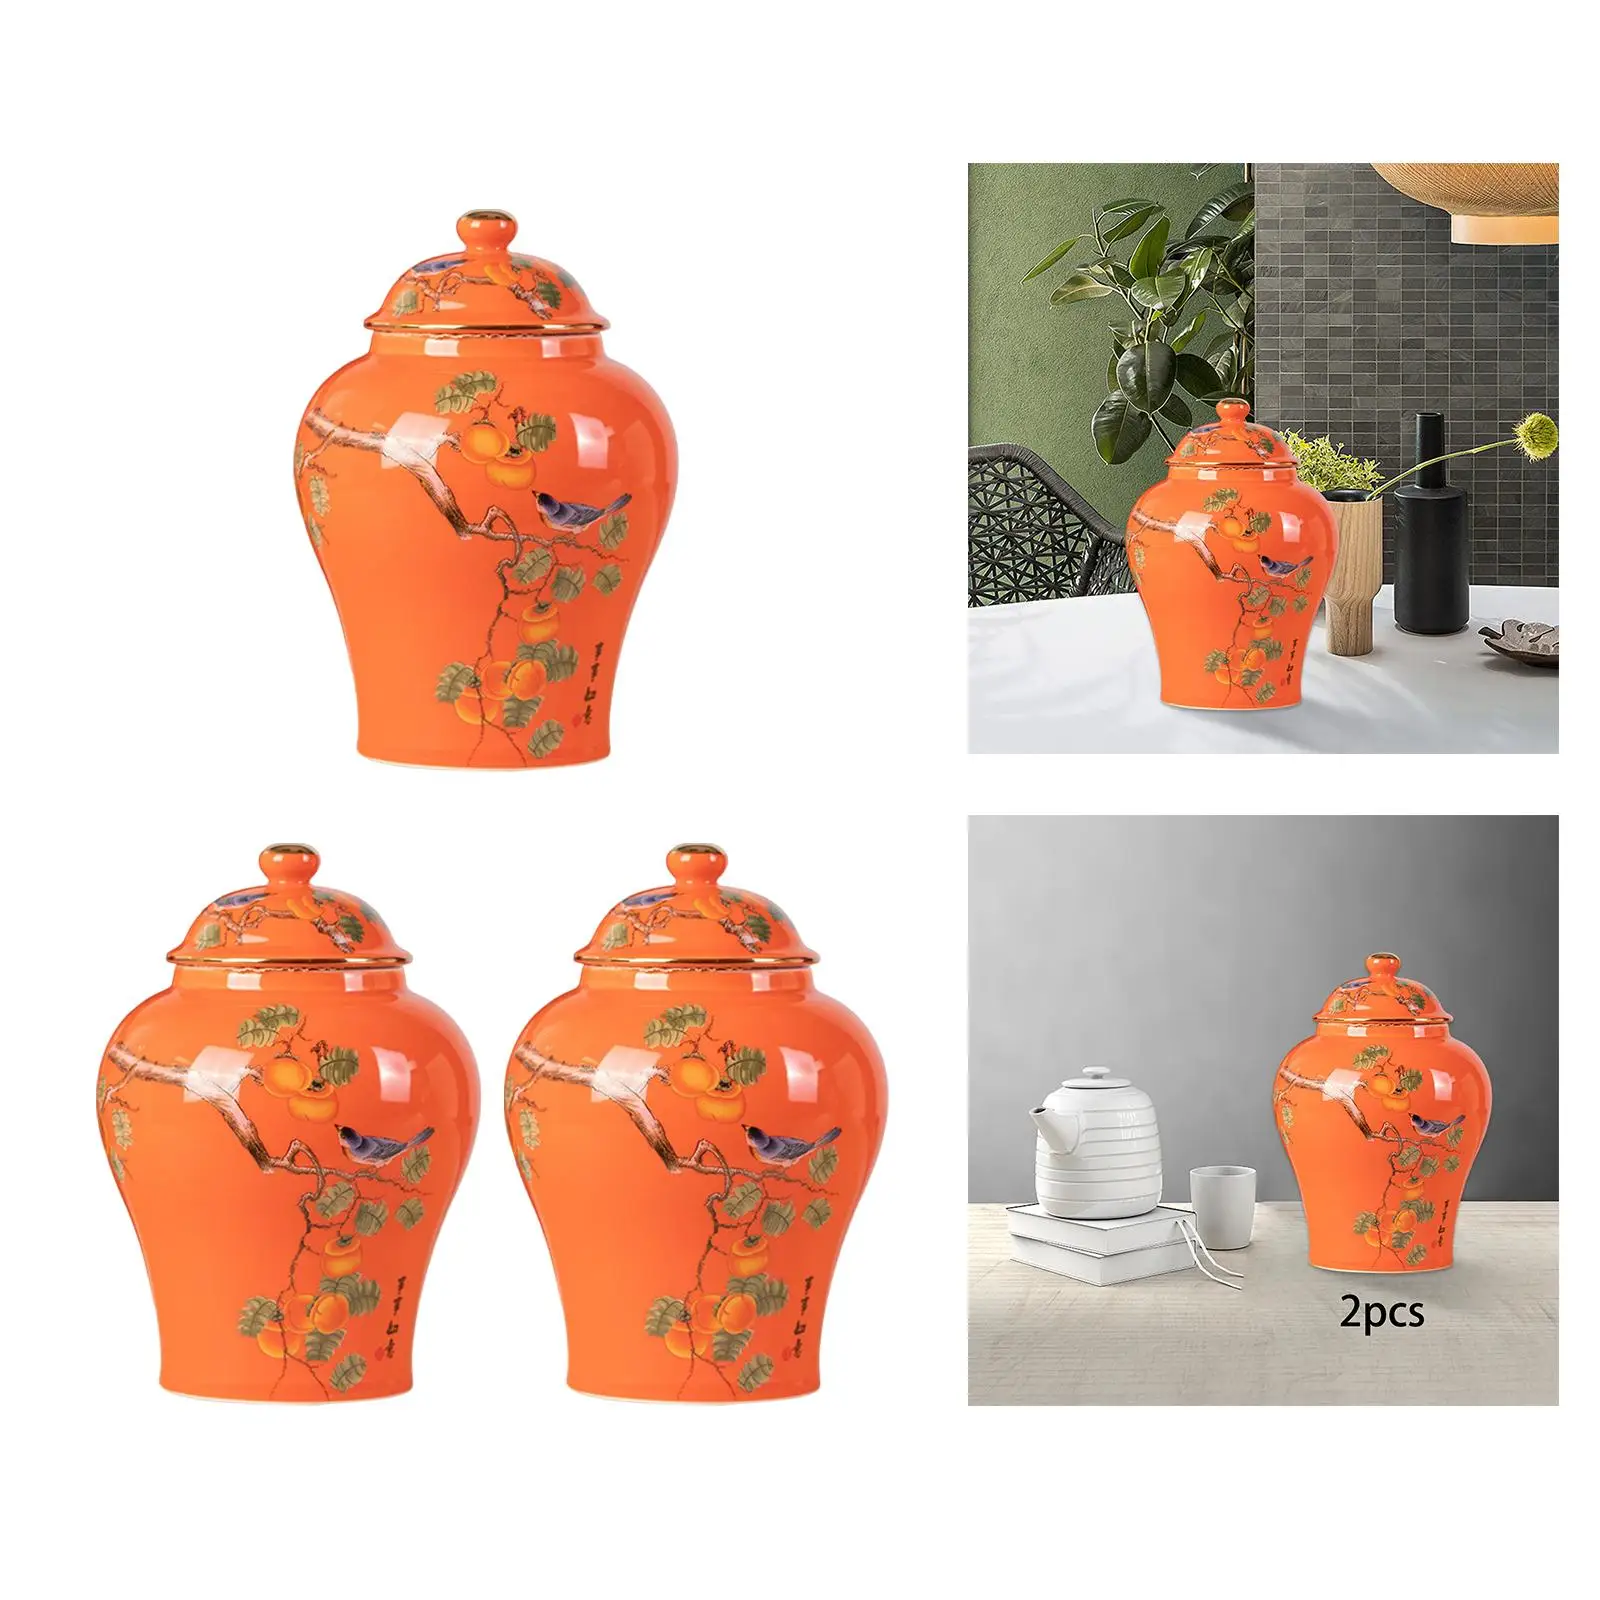 Ceramic Ginger Jars Porcelain Jar Tea Tin Decorative Temple Jars Food Jar Flower Pot Flower Vase for Home Bedroom Office Decor